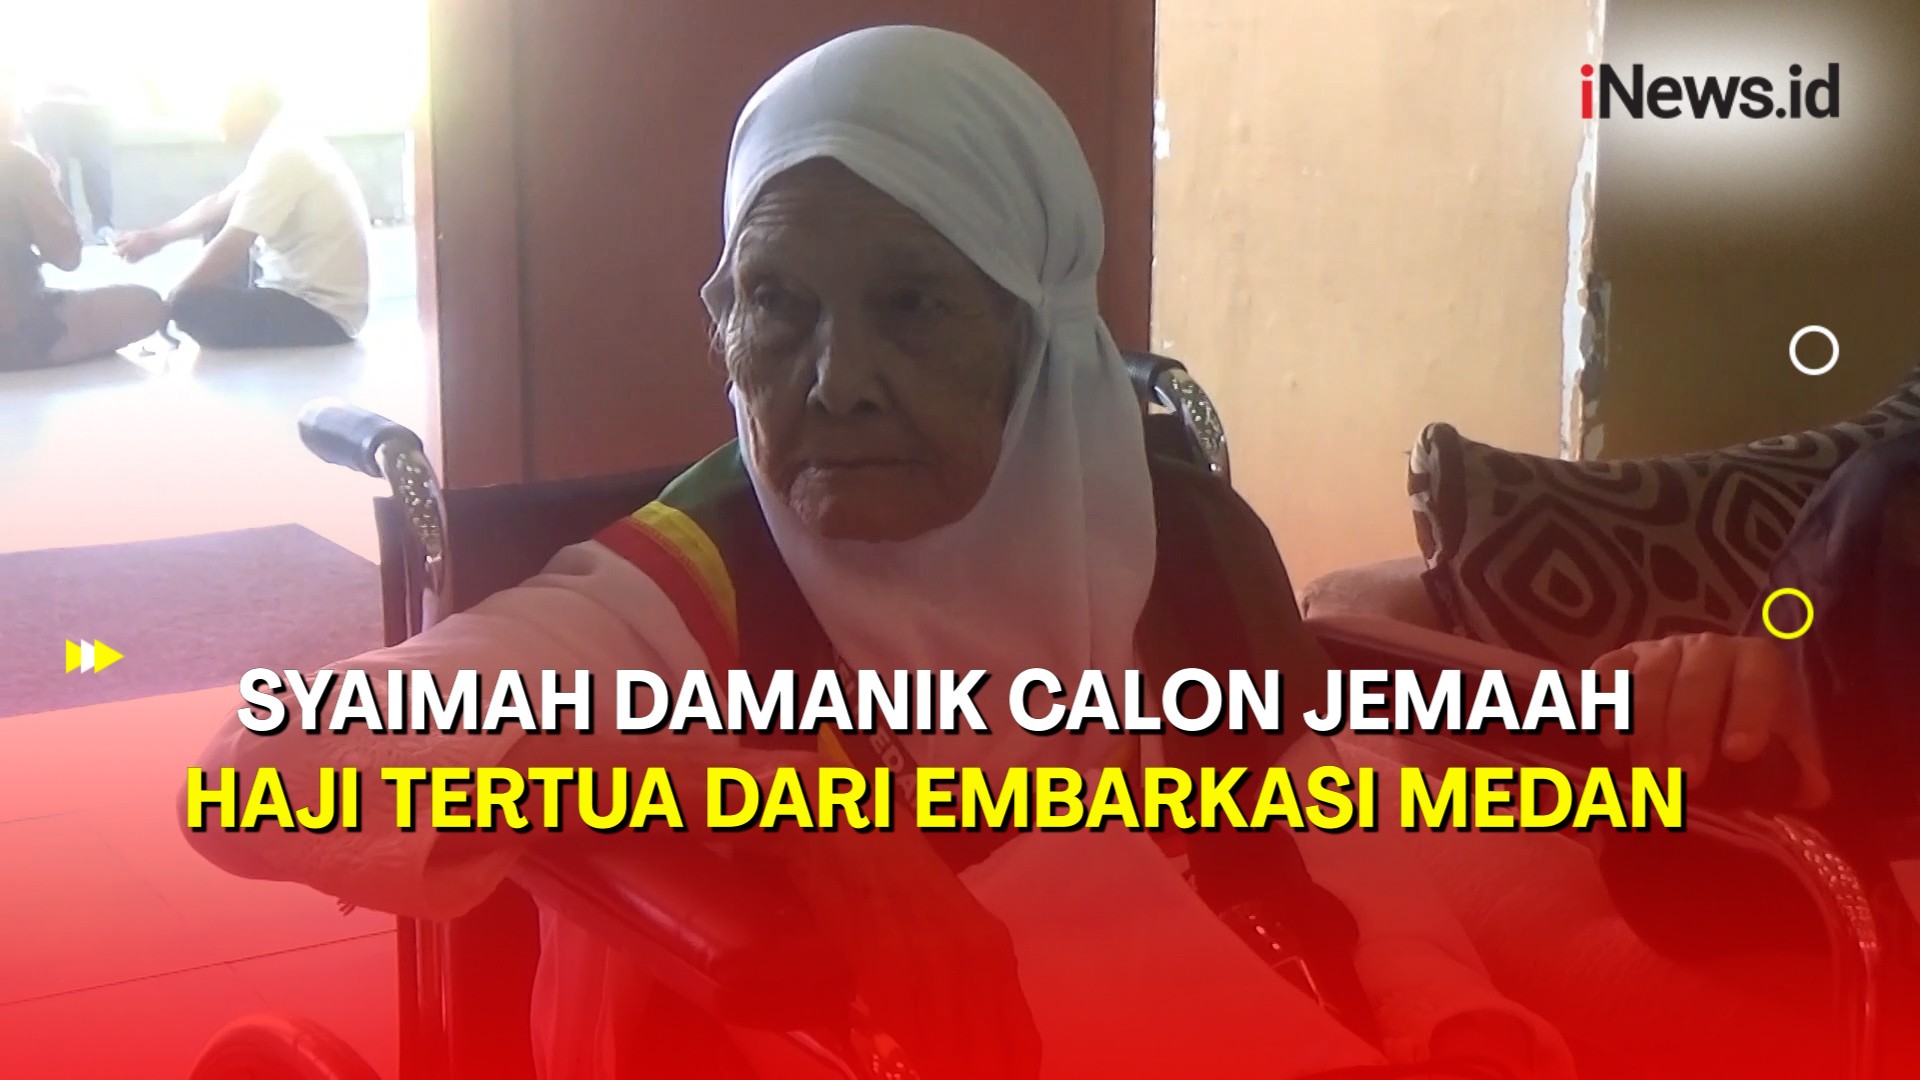 Berusia 95 Tahun, Syaimah Damanik Jadi Calon Jemaah Haji Tertua dari Embarkasi Medan 